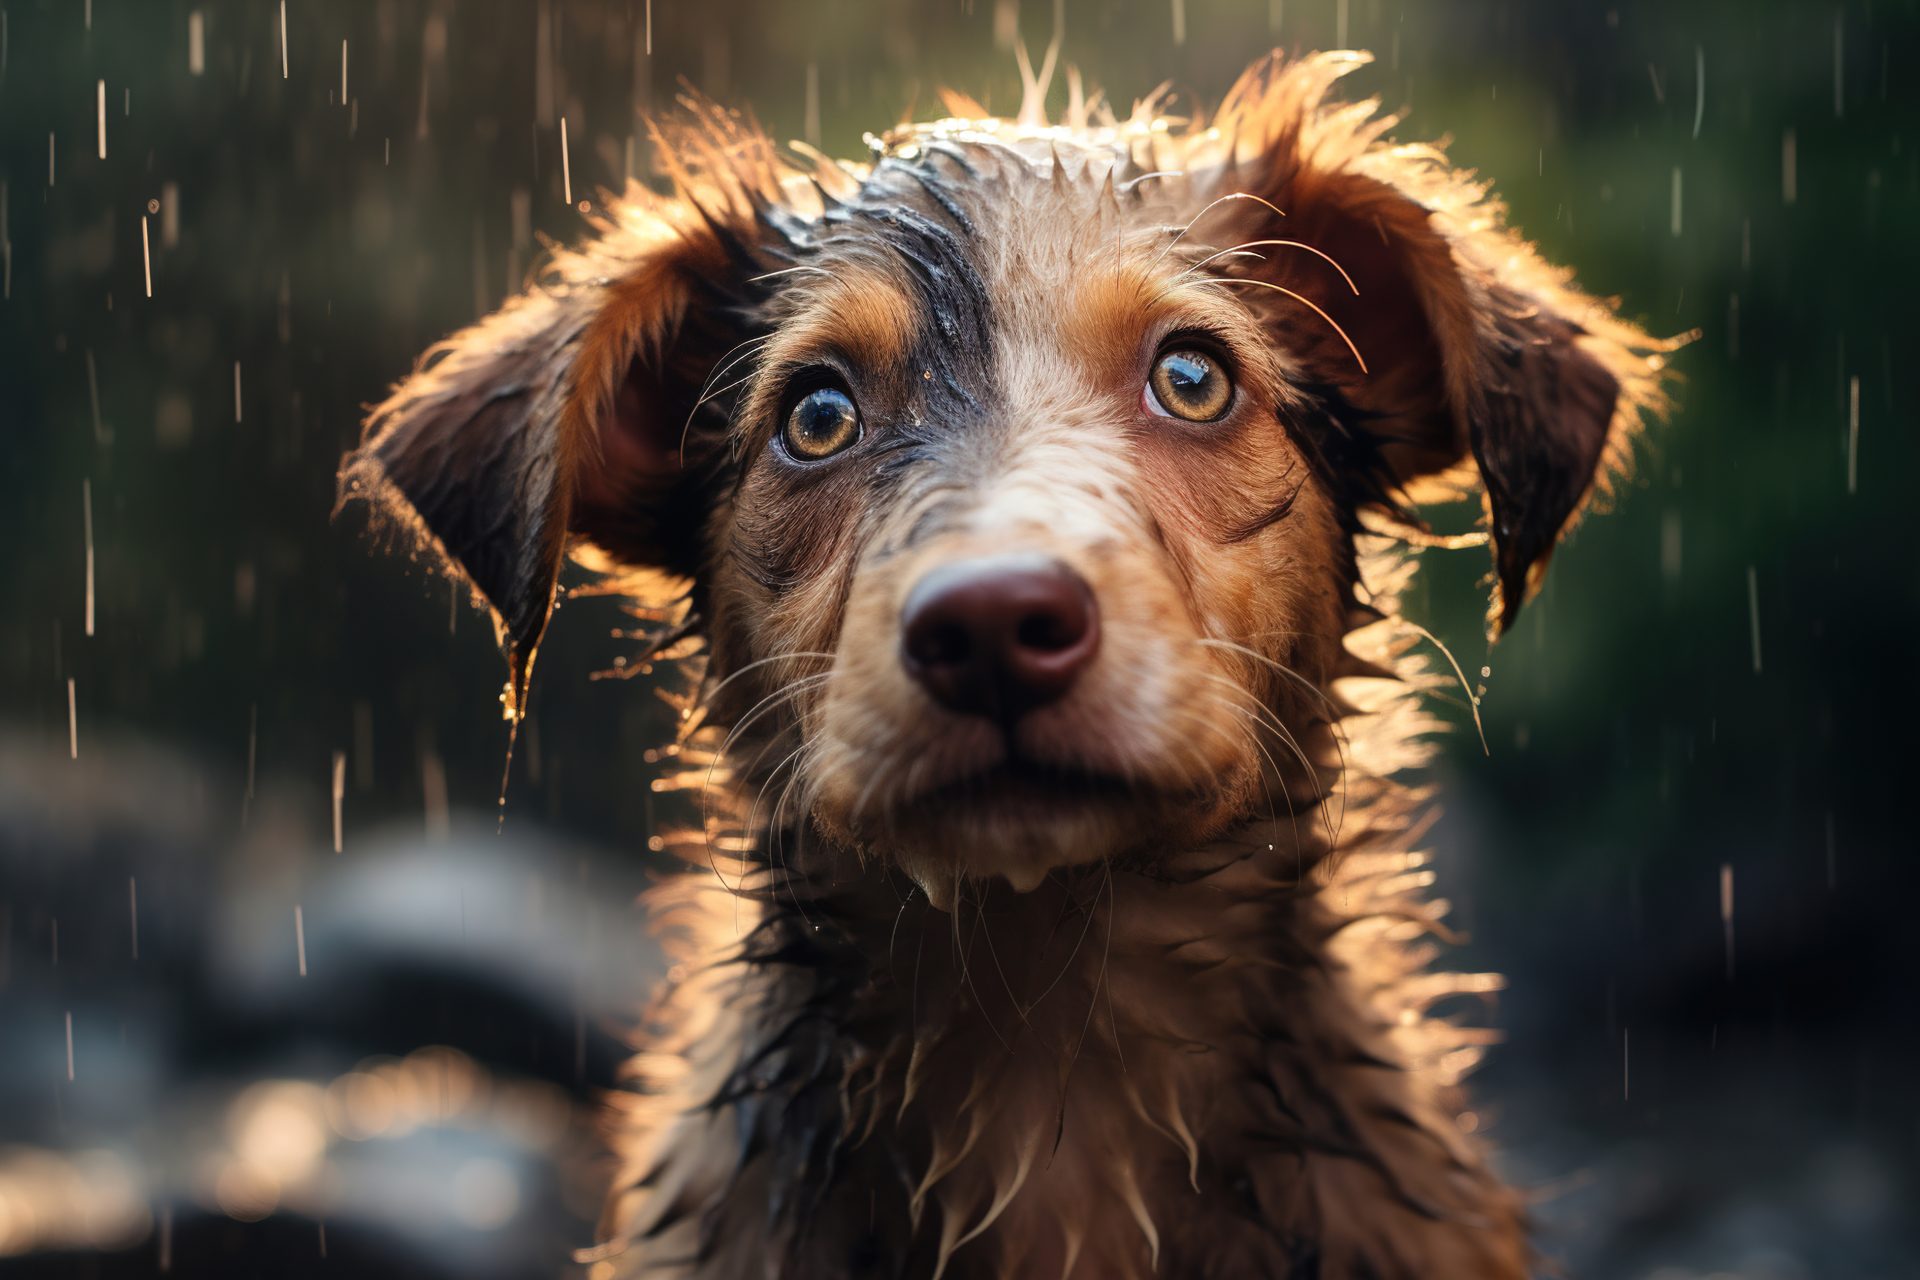 雨に打たれて悲しげな表情の犬